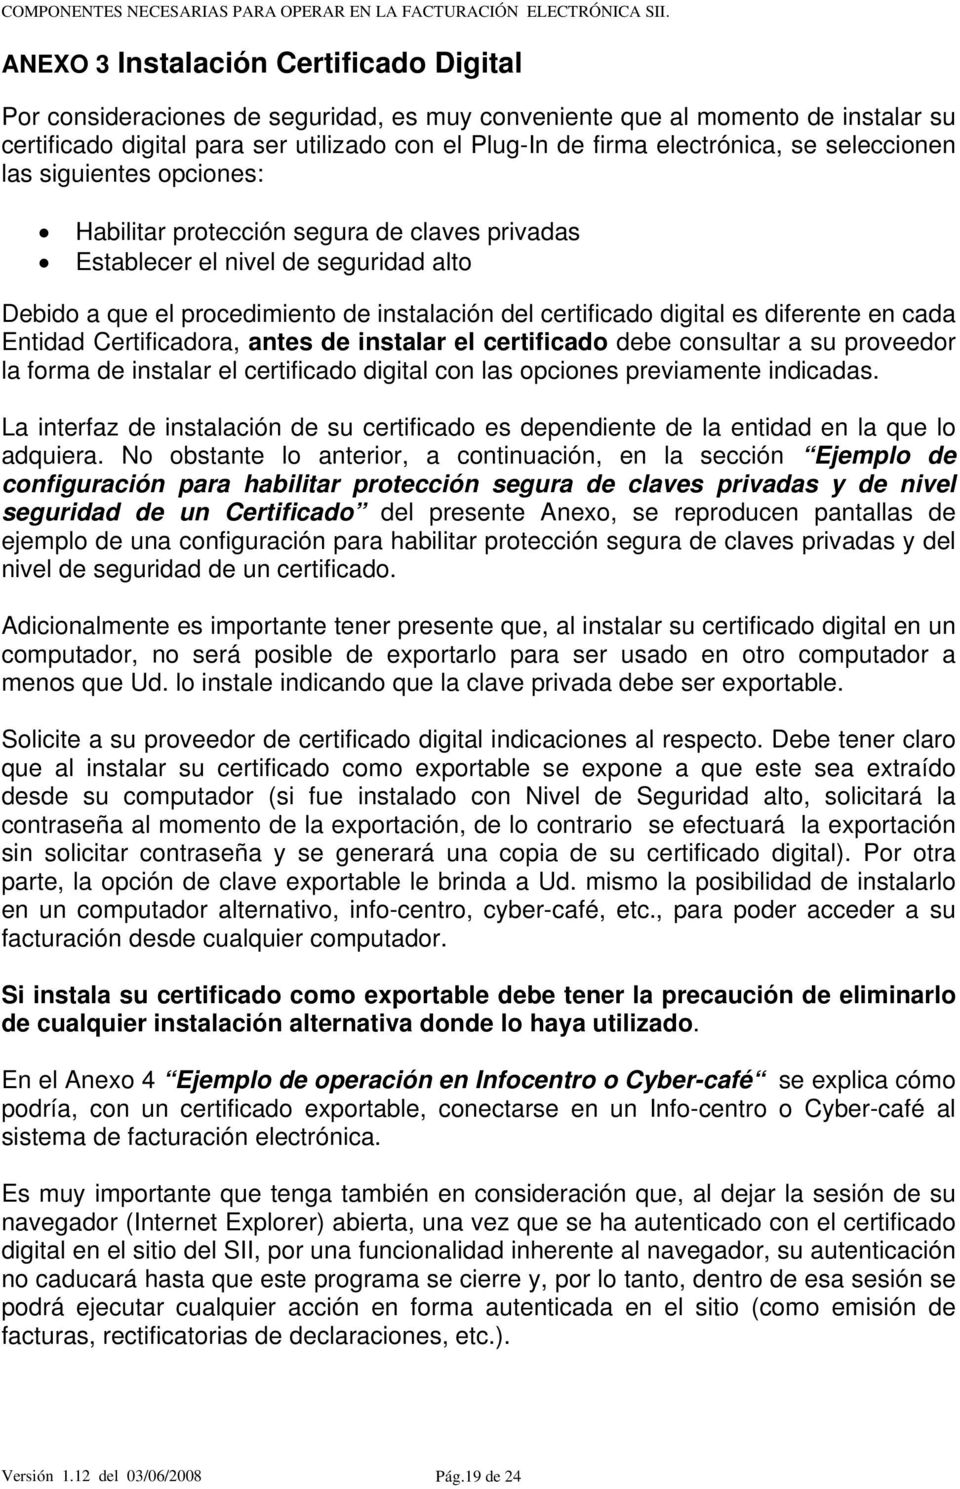 diferente en cada Entidad Certificadora, antes de instalar el certificado debe consultar a su proveedor la forma de instalar el certificado digital con las opciones previamente indicadas.